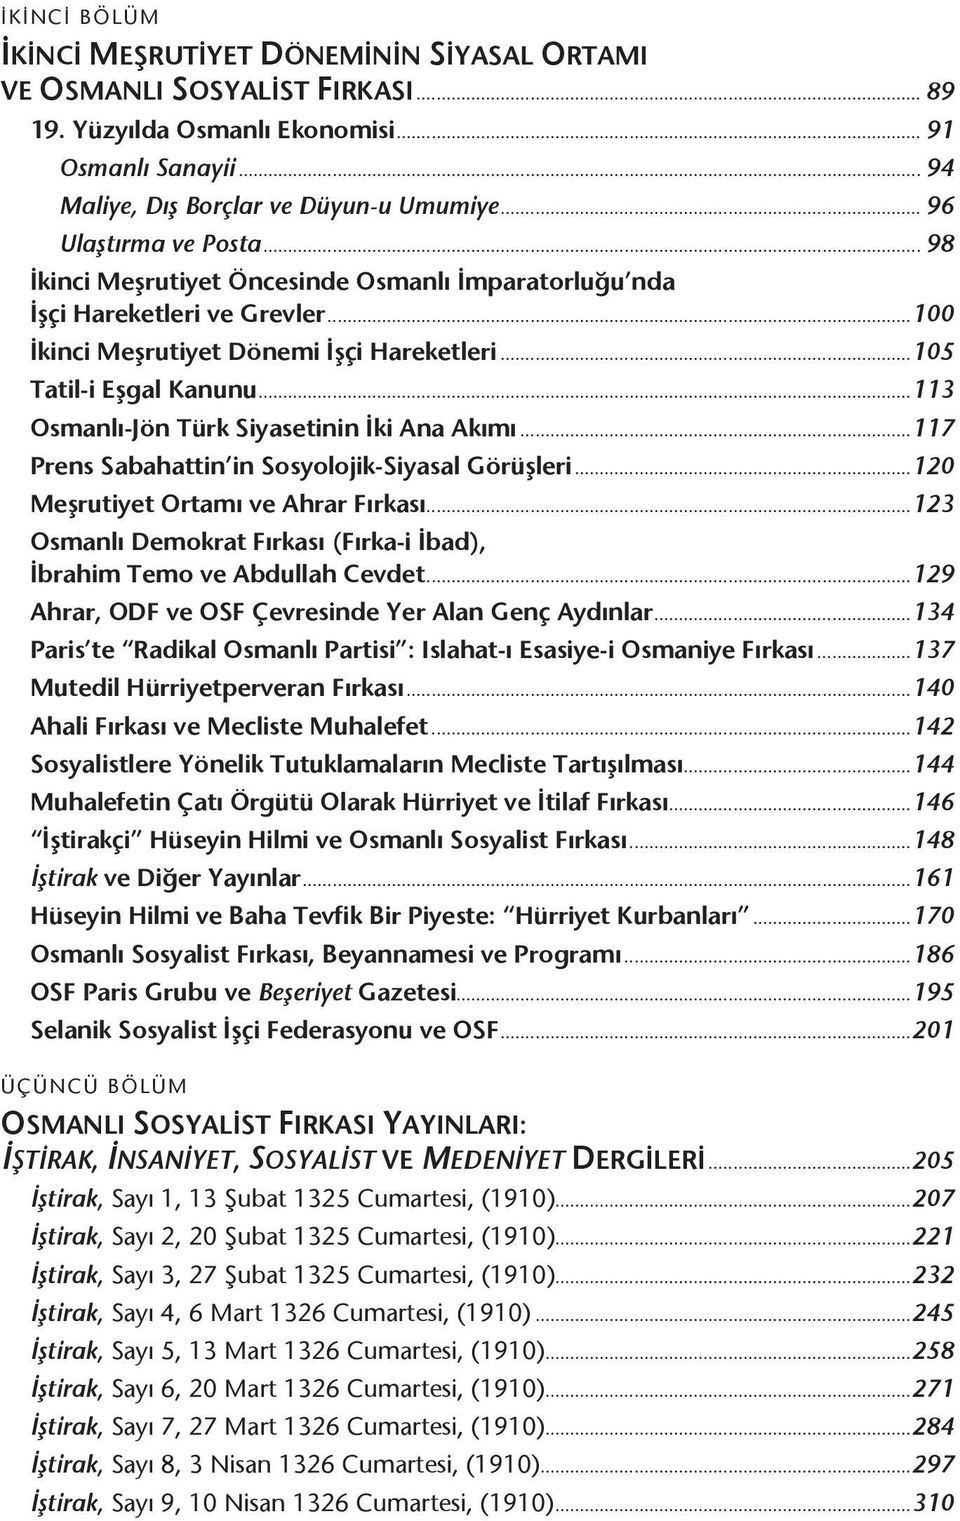 ..113 Osmanlı-Jön Türk Siyasetinin İki Ana Akımı...117 Prens Sabahattin in Sosyolojik-Siyasal Görüşleri...120 Meşrutiyet Ortamı ve Ahrar Fırkası.